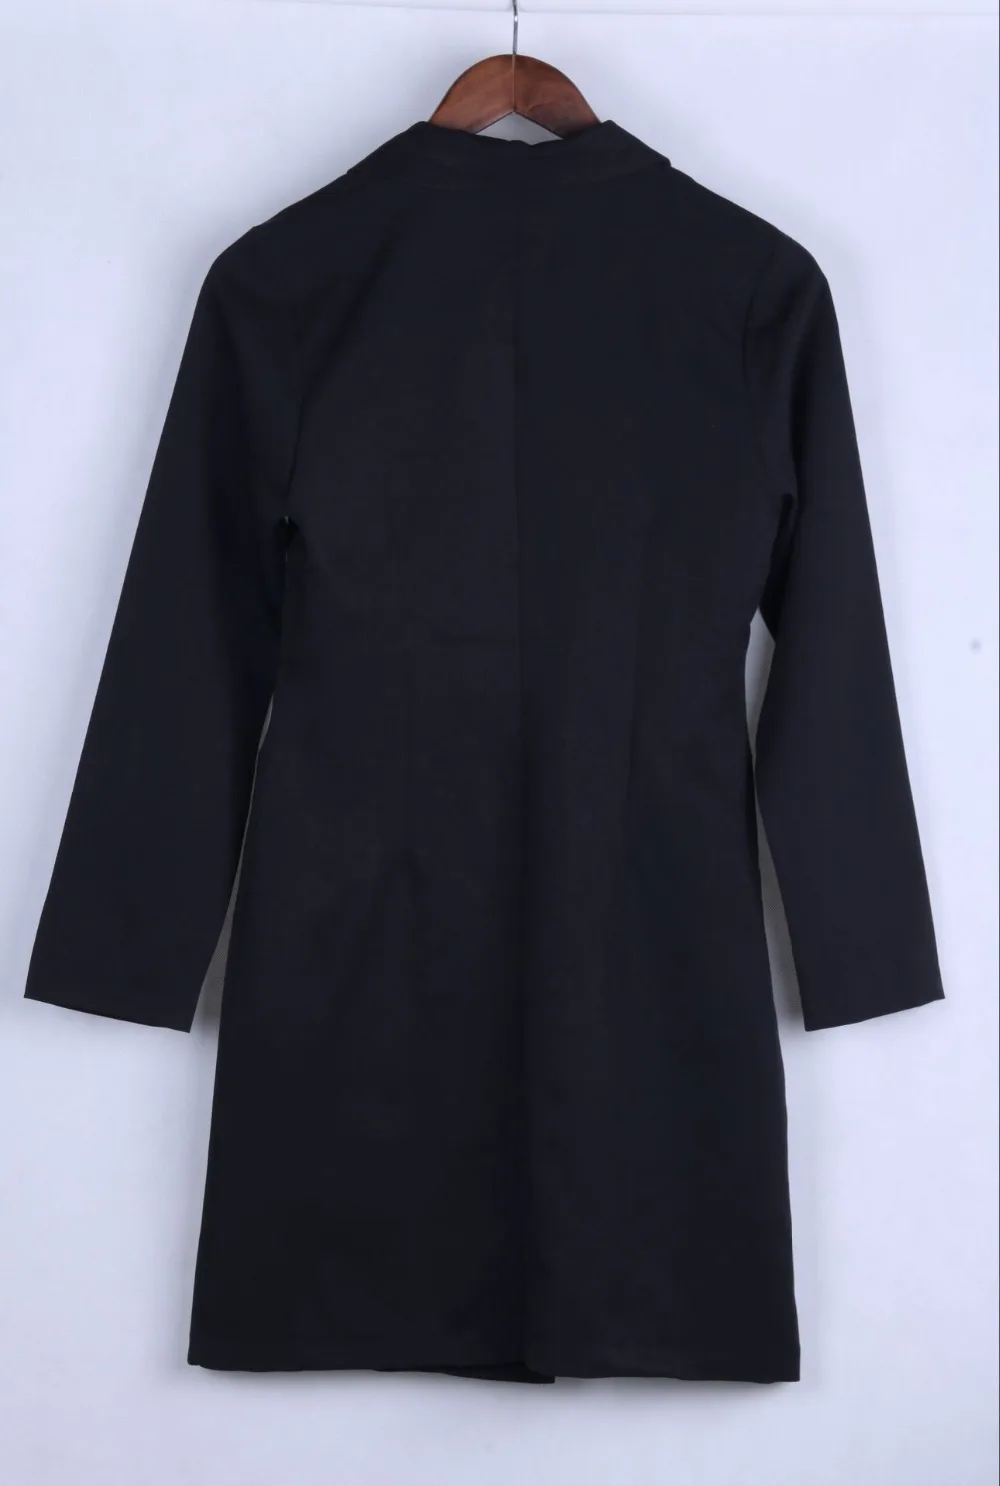 Двубортный однотонный пиджак с v-образным вырезом тонкий жакет Женский Осенний длинный формальный пиджак с длинным рукавом платье для офисных леди